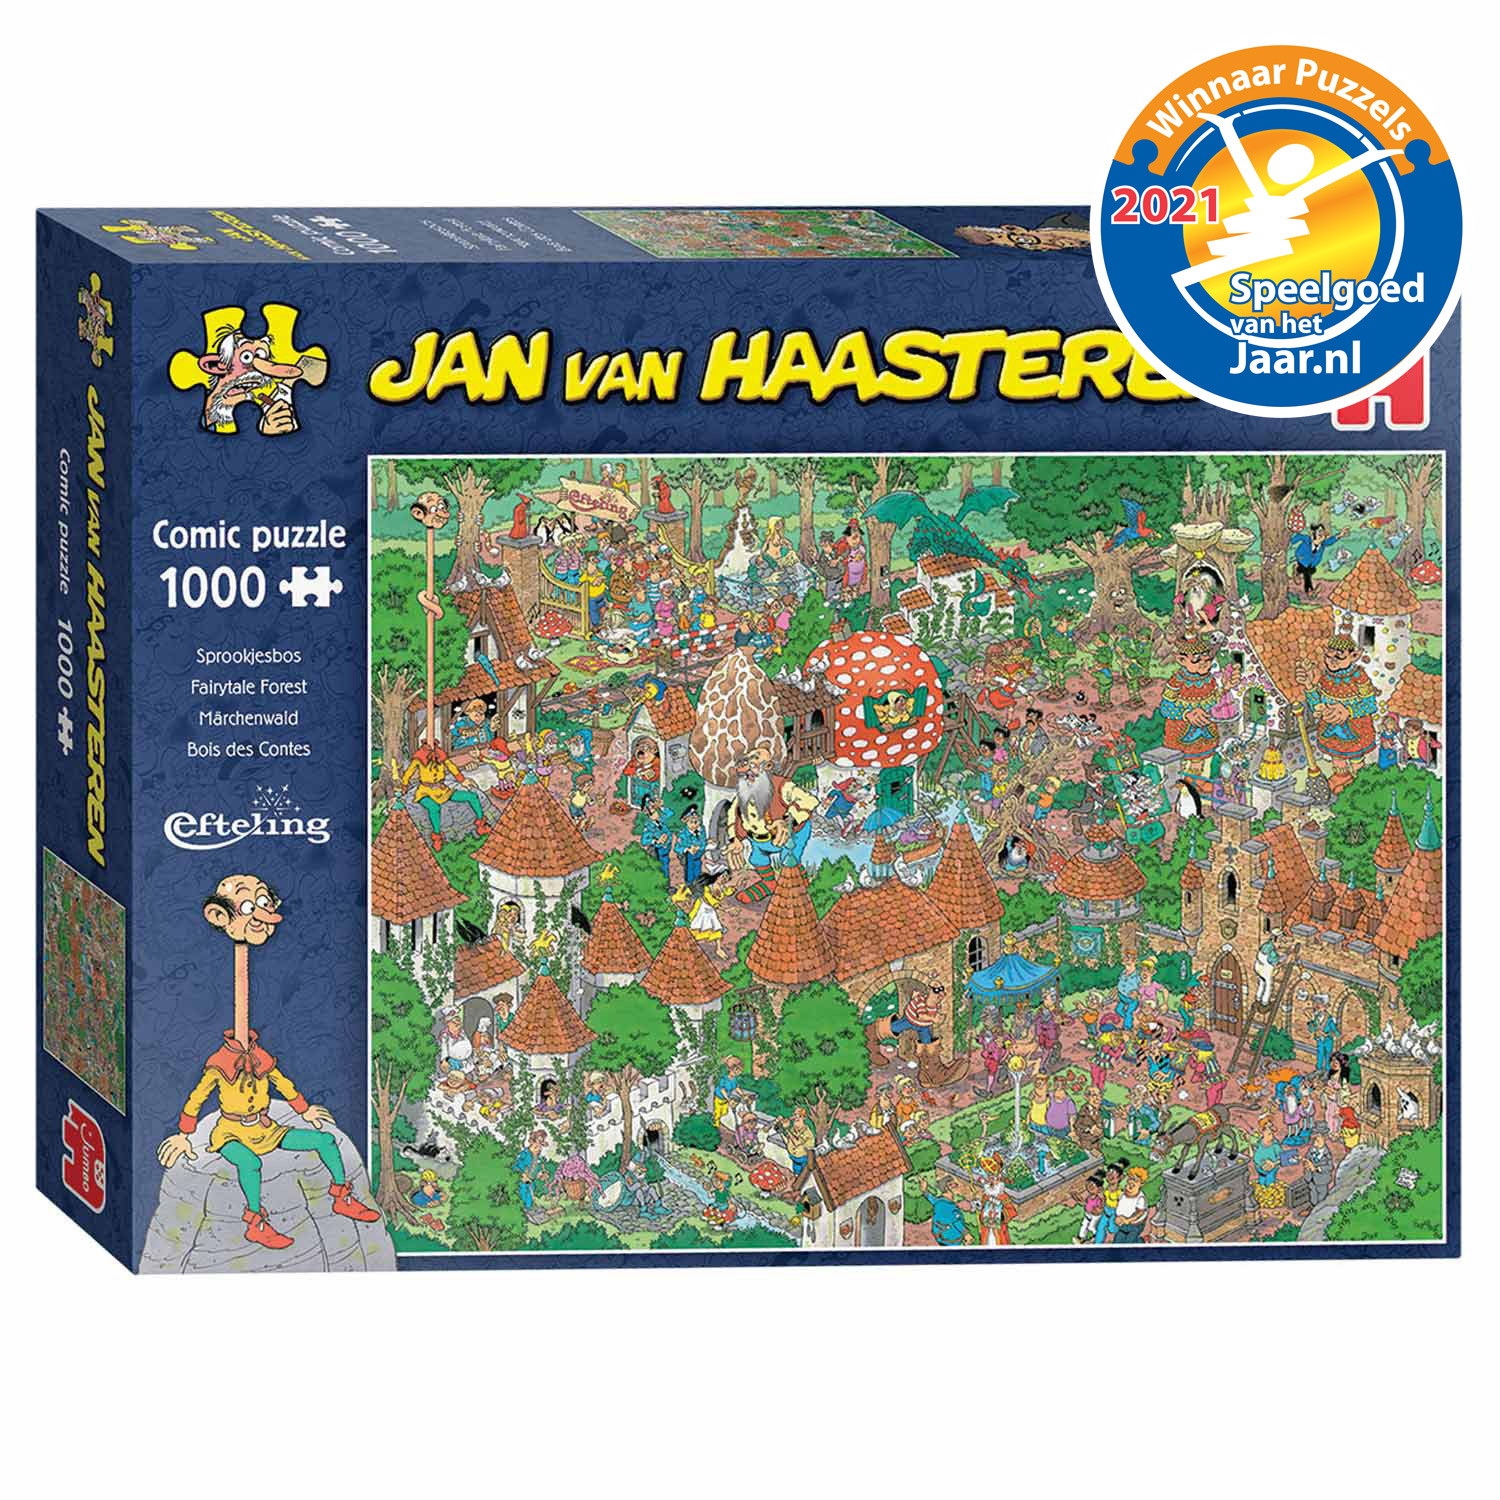 Jumbo 20045 1000 ピース ジグソーパズル オランダ発売 おとぎの森 Jan